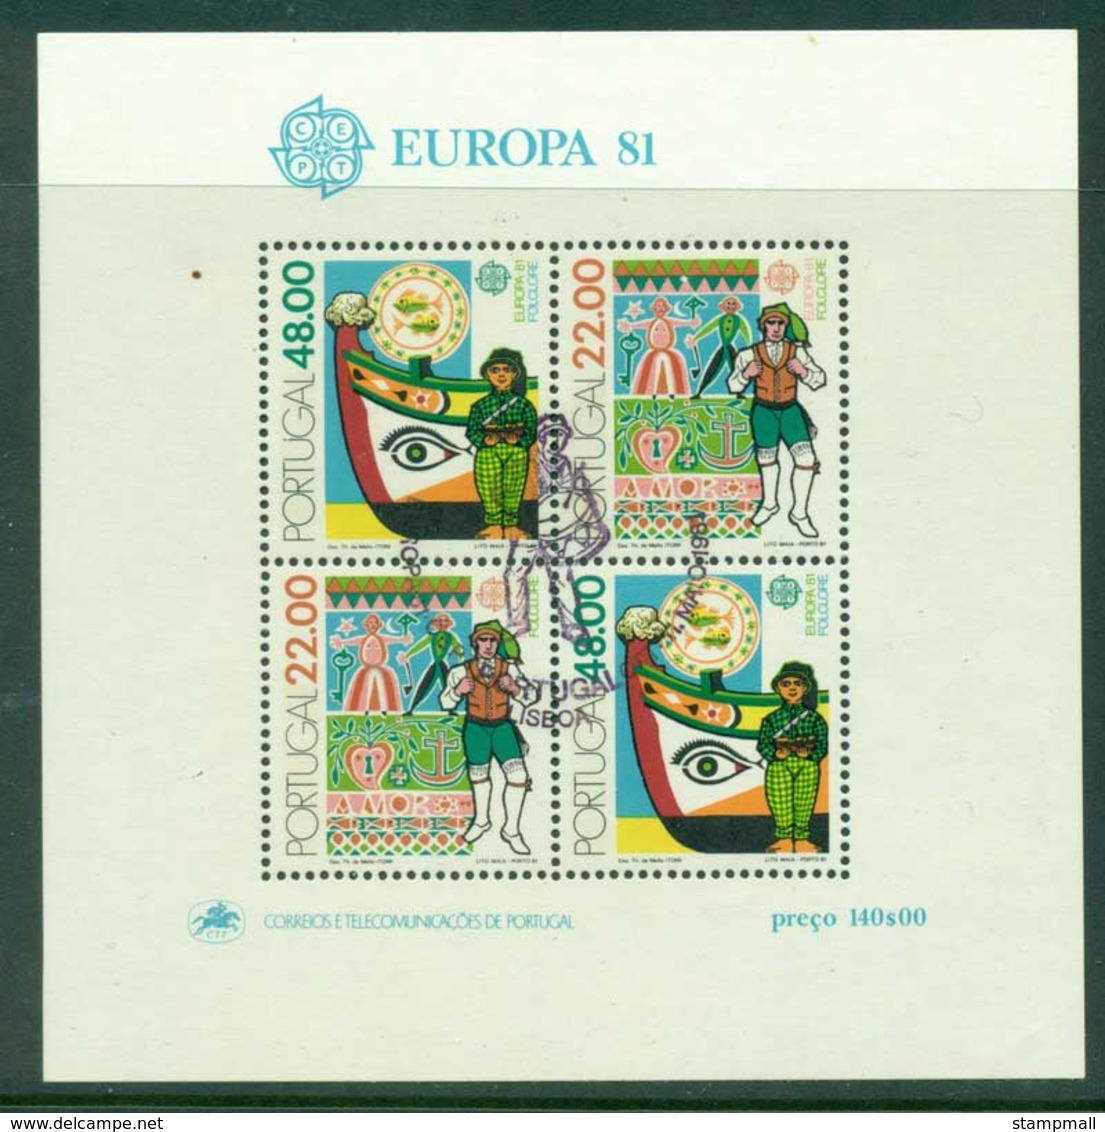 Portugal 1981 Europa MS FDI CTO Lot17432 - Unused Stamps